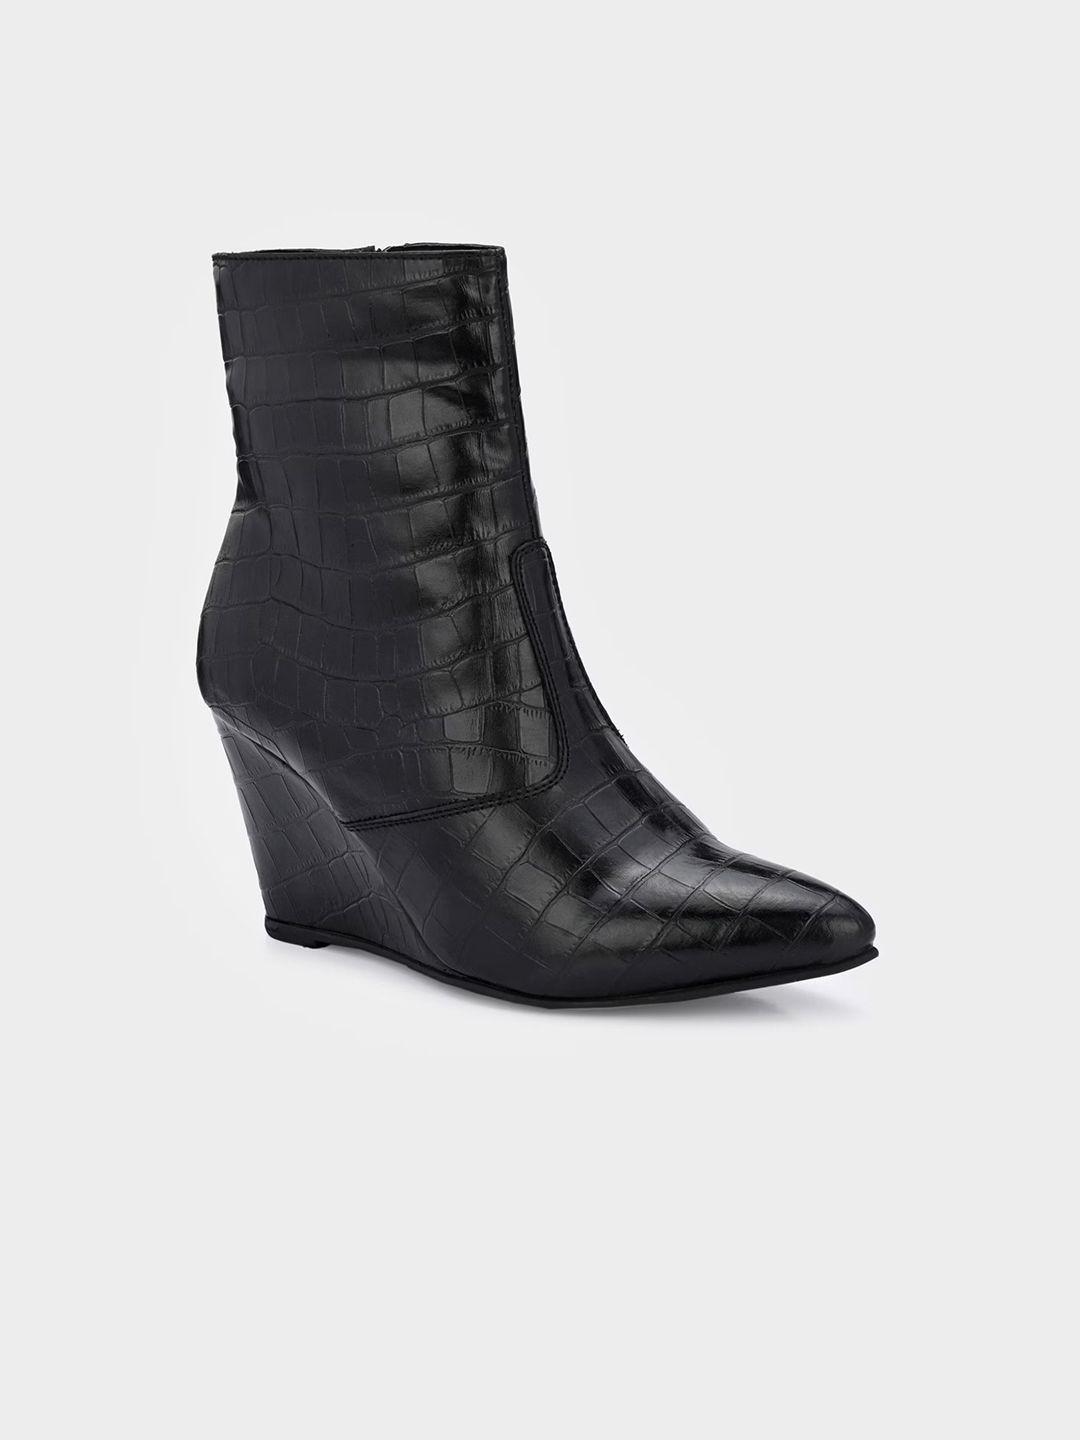 miseen women textured wedge-heeled mid-top regular boots